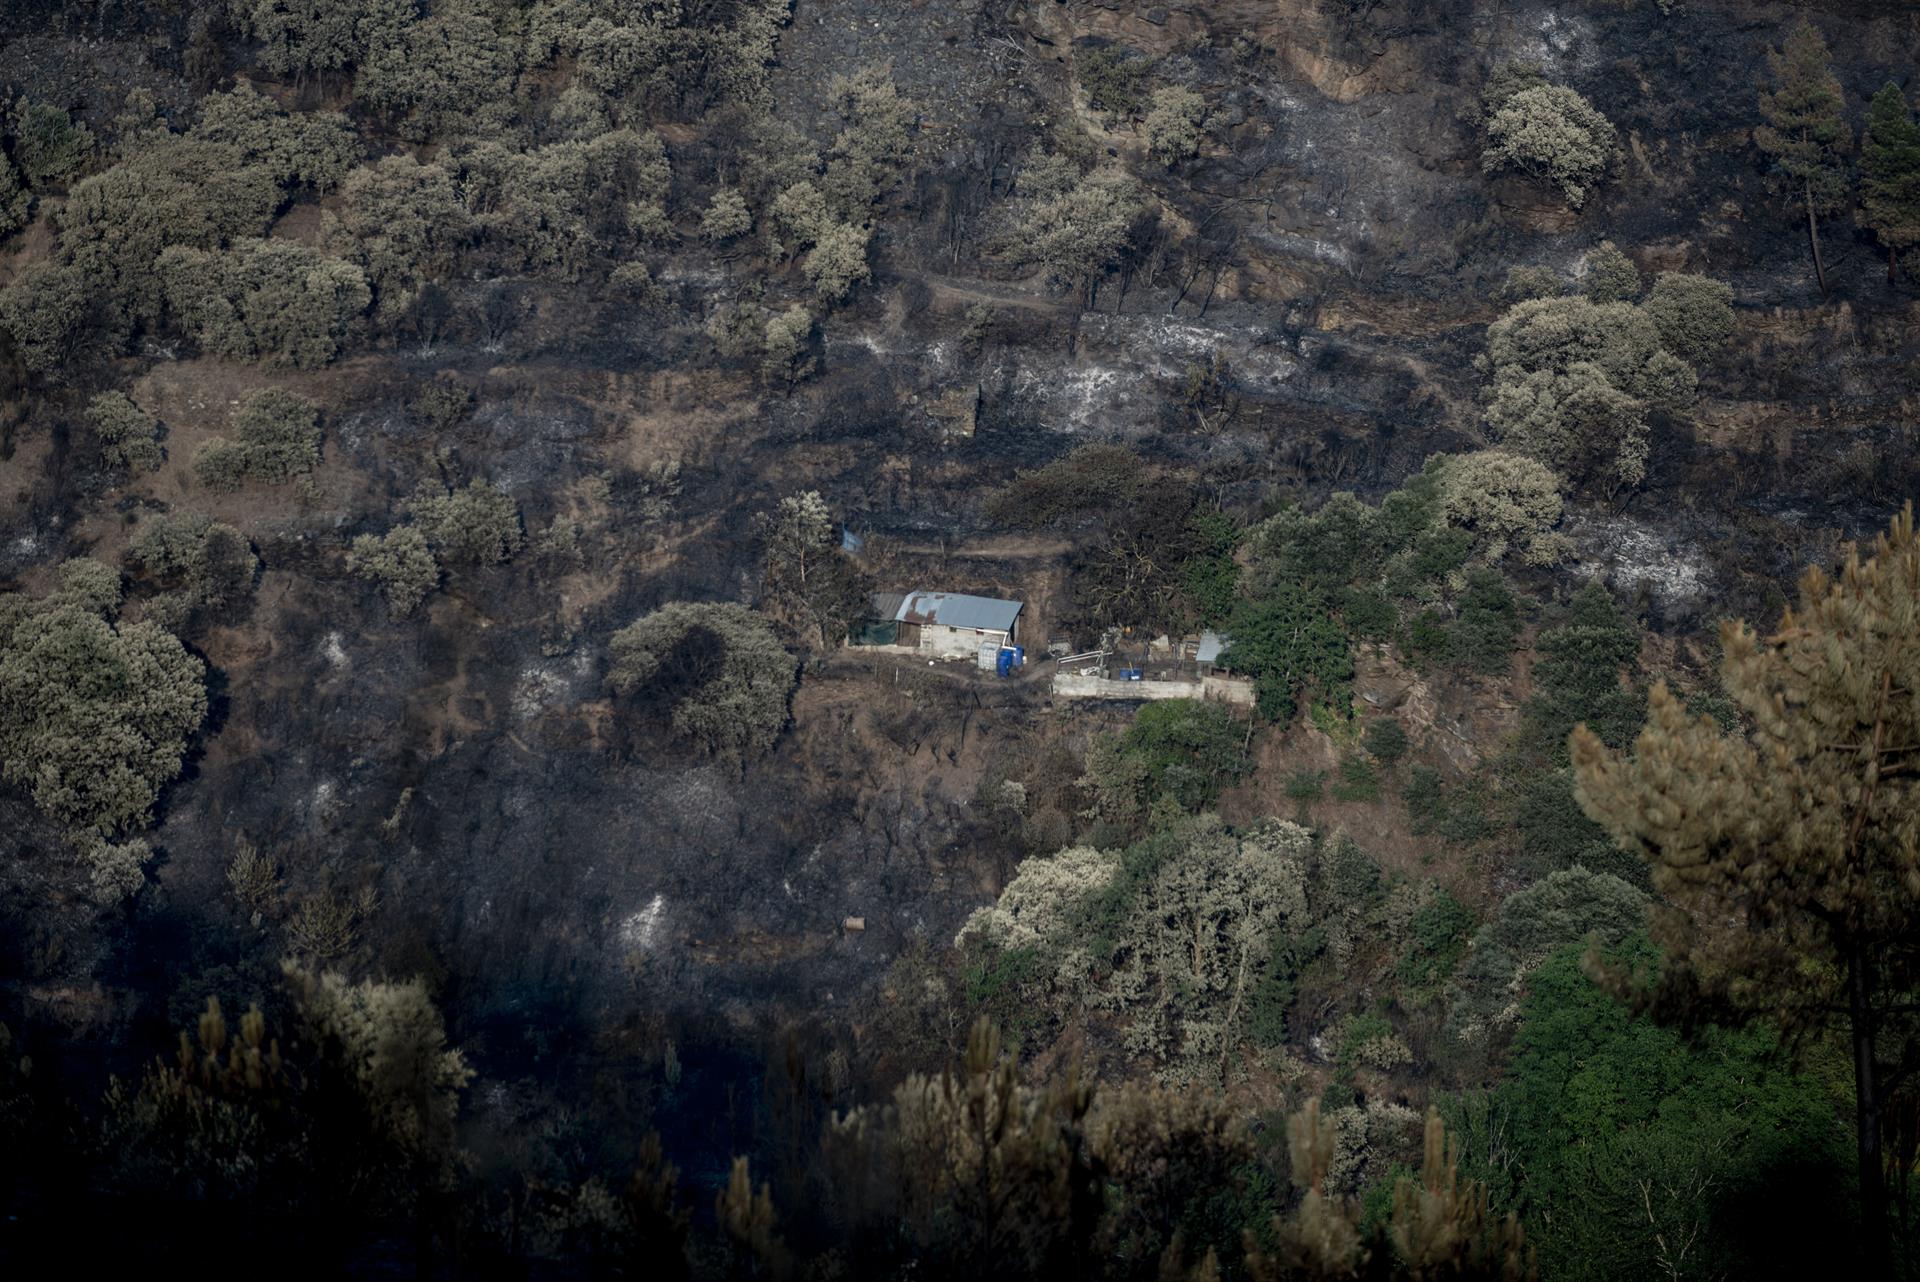 Amenaza de incendios forestales en Europa disminuyó tras paso de ola de calor